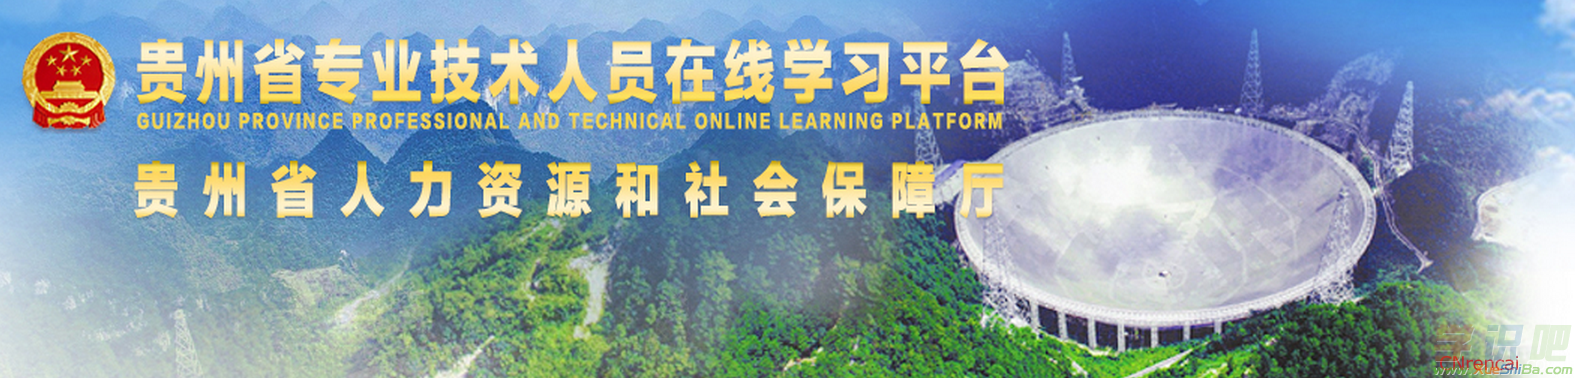 贵州省专业技术人员在线学习平台「官方网站」